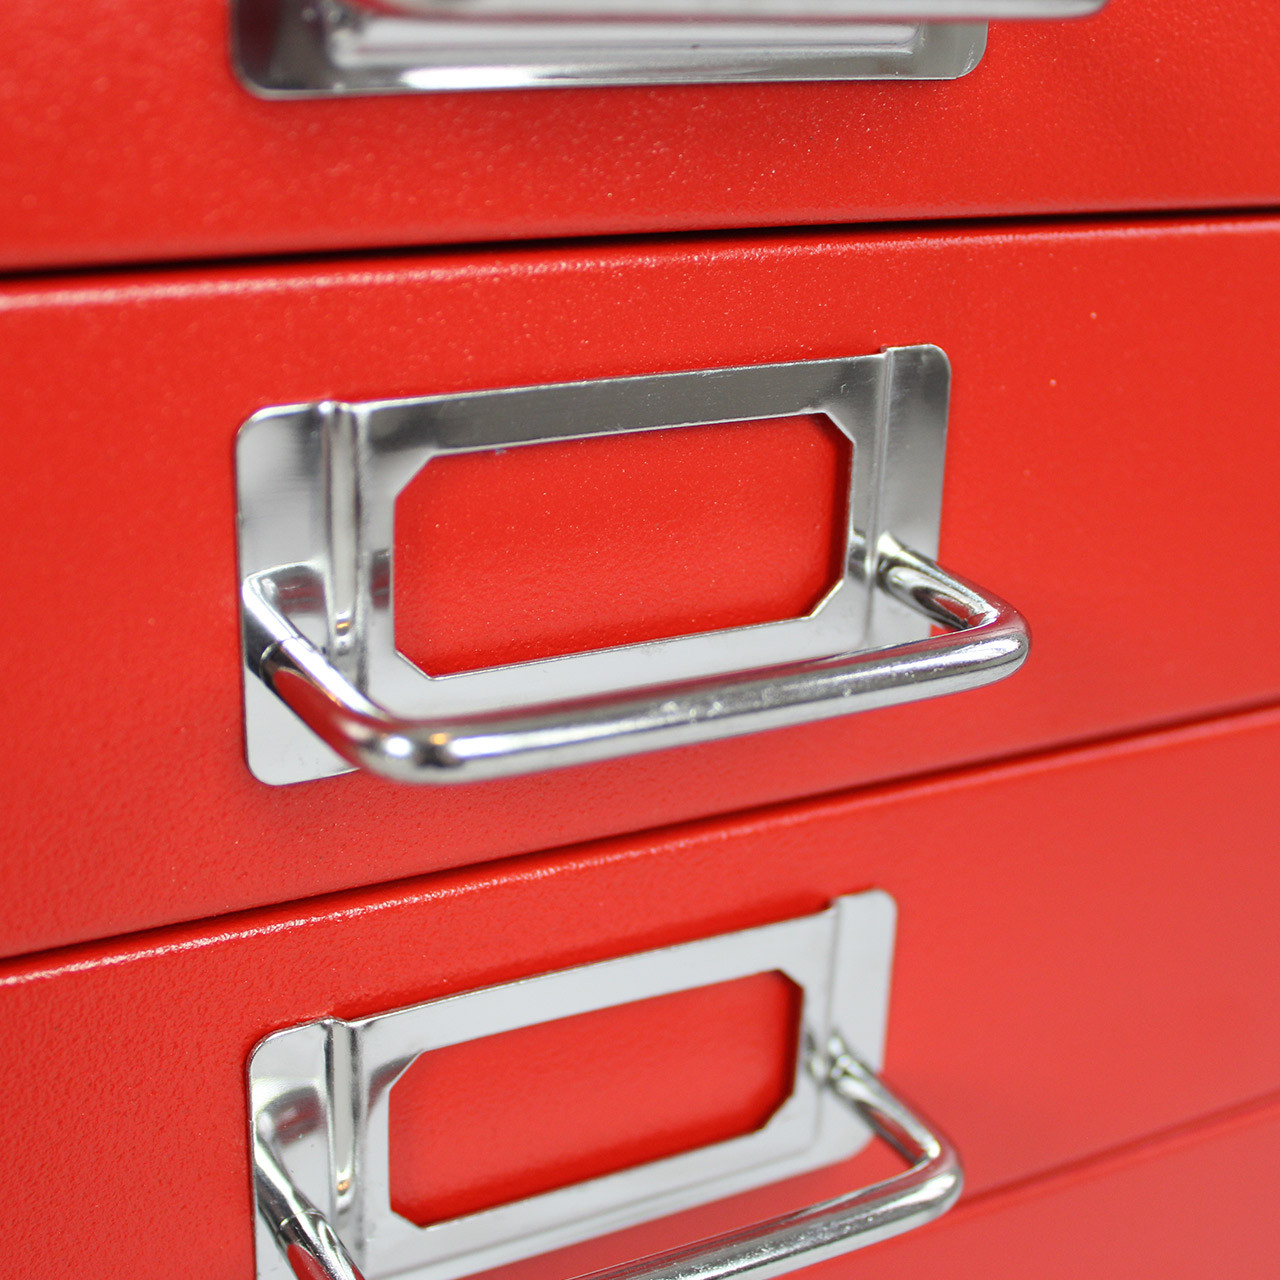  Bisley 6 Drawer Steel Under-Desk Multidrawer Storage Cabinet,  Charcoal (MD6-CH) : Home & Kitchen